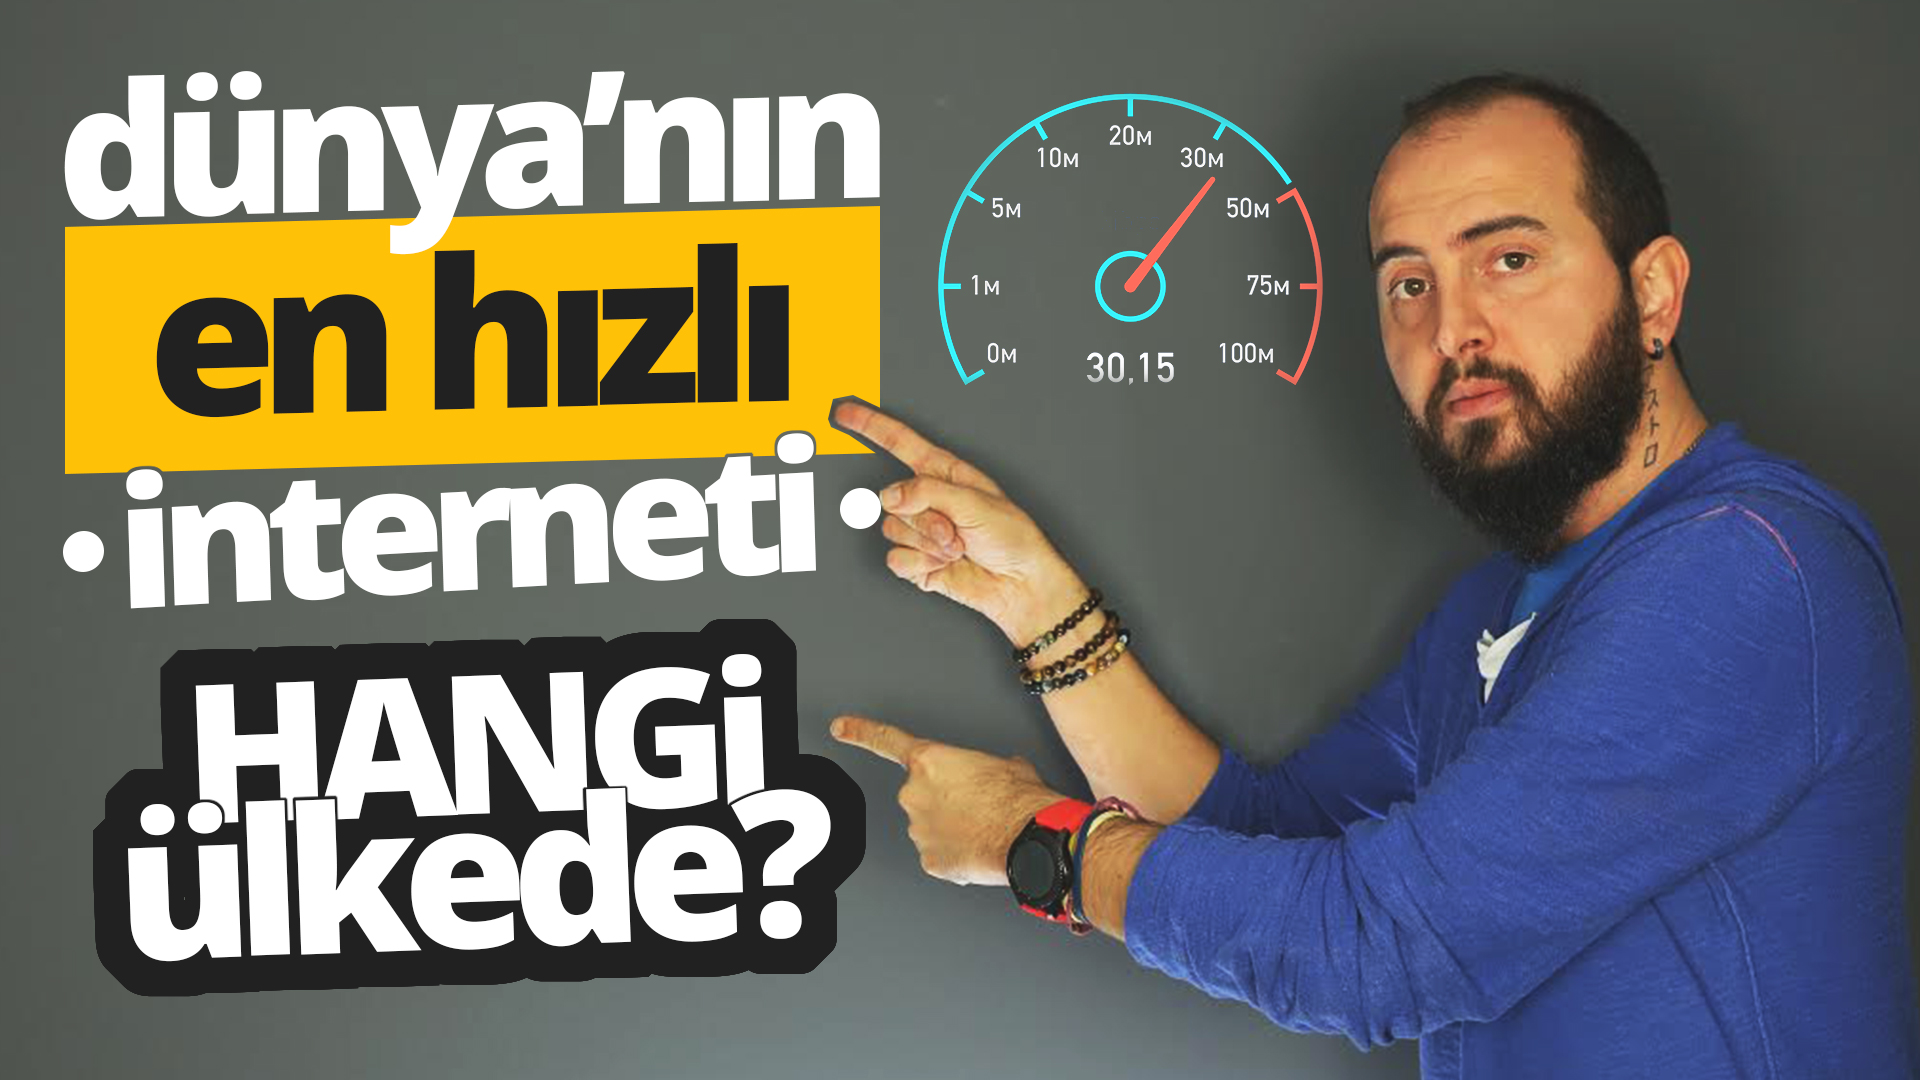 Dünyanın en hızlı interneti hangi ülkede? (Video)